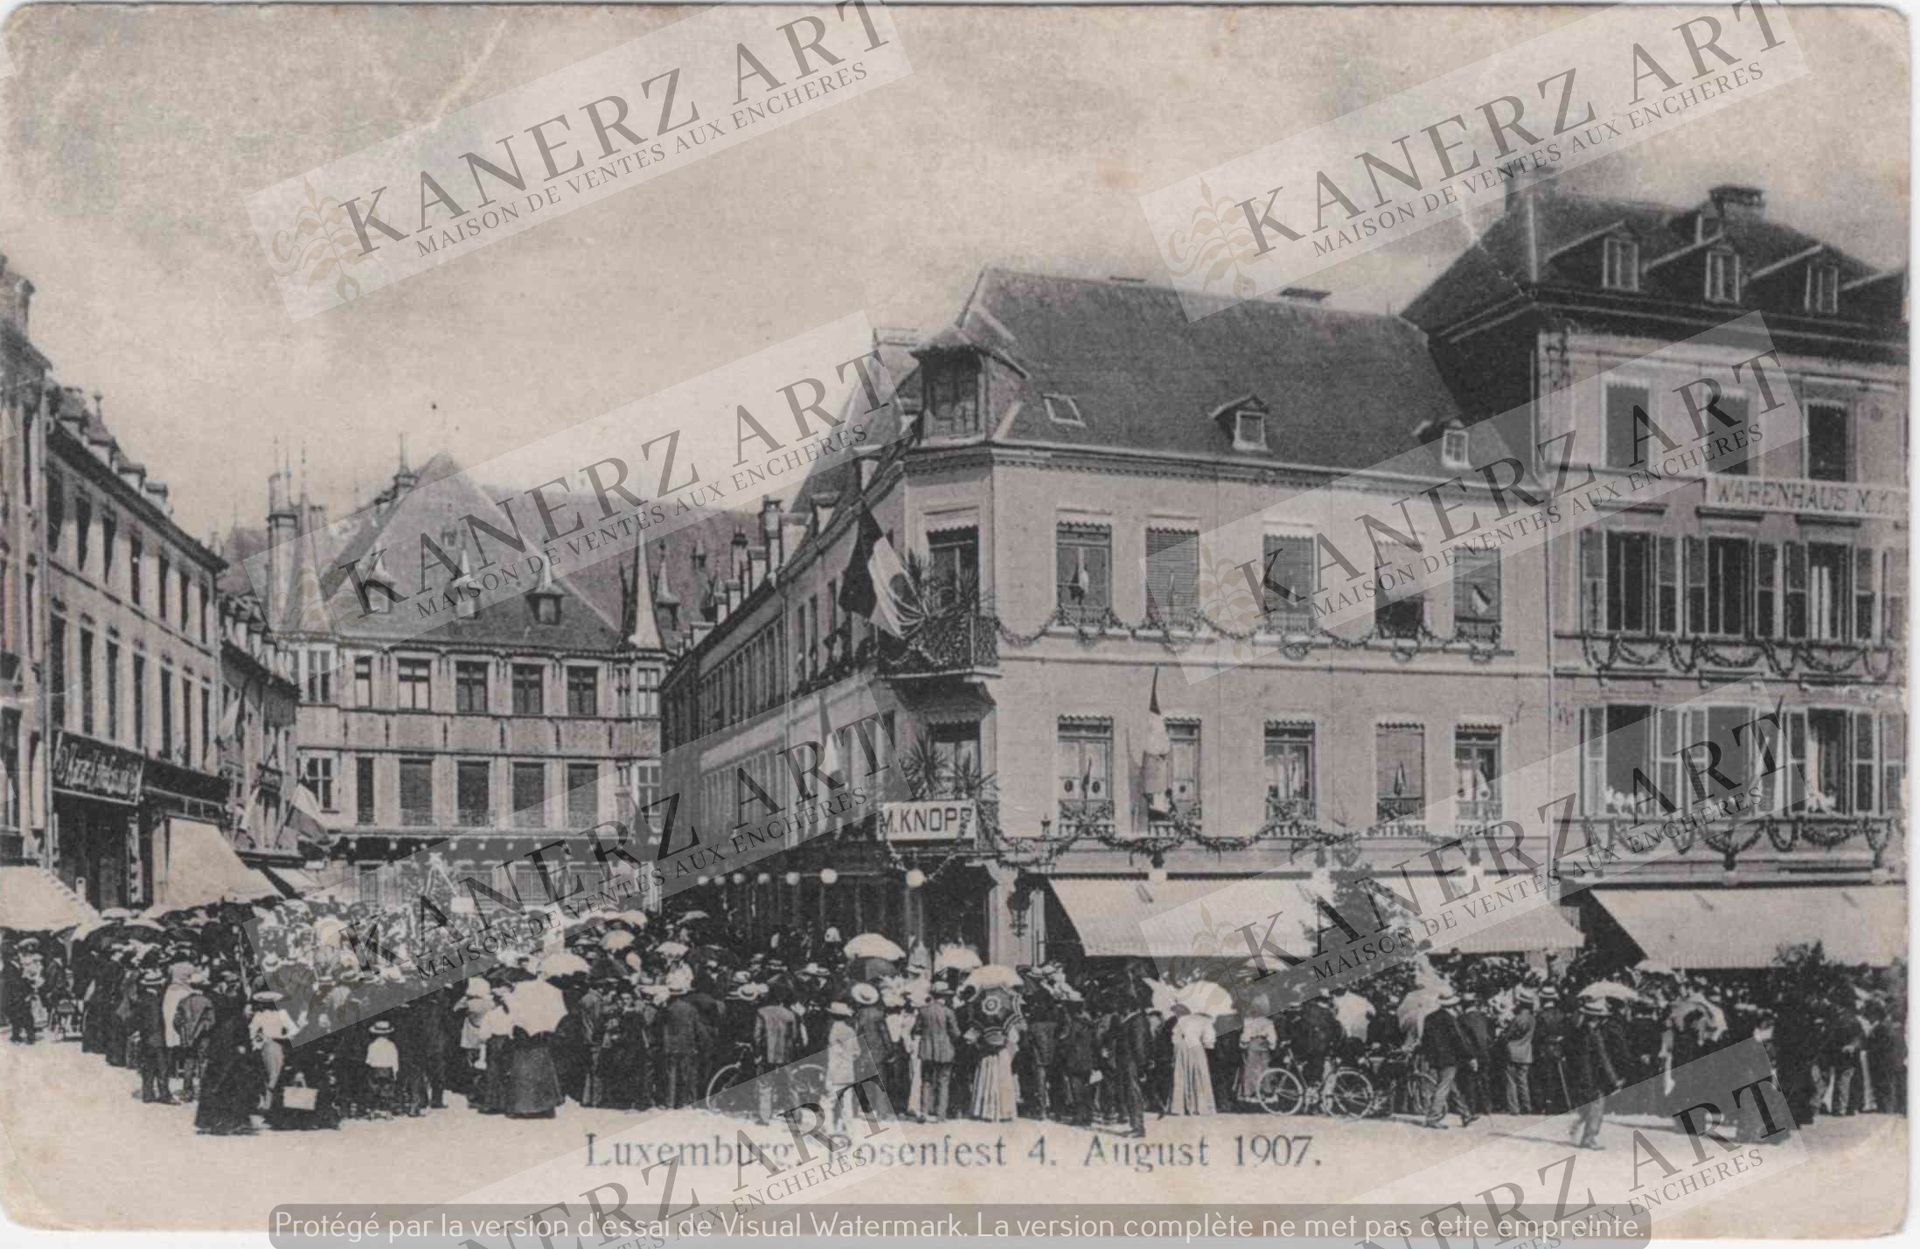 Null (UFFICIALE) 2x Cartolina postale Rosenfest in Lussemburgo il 4 agosto 1907